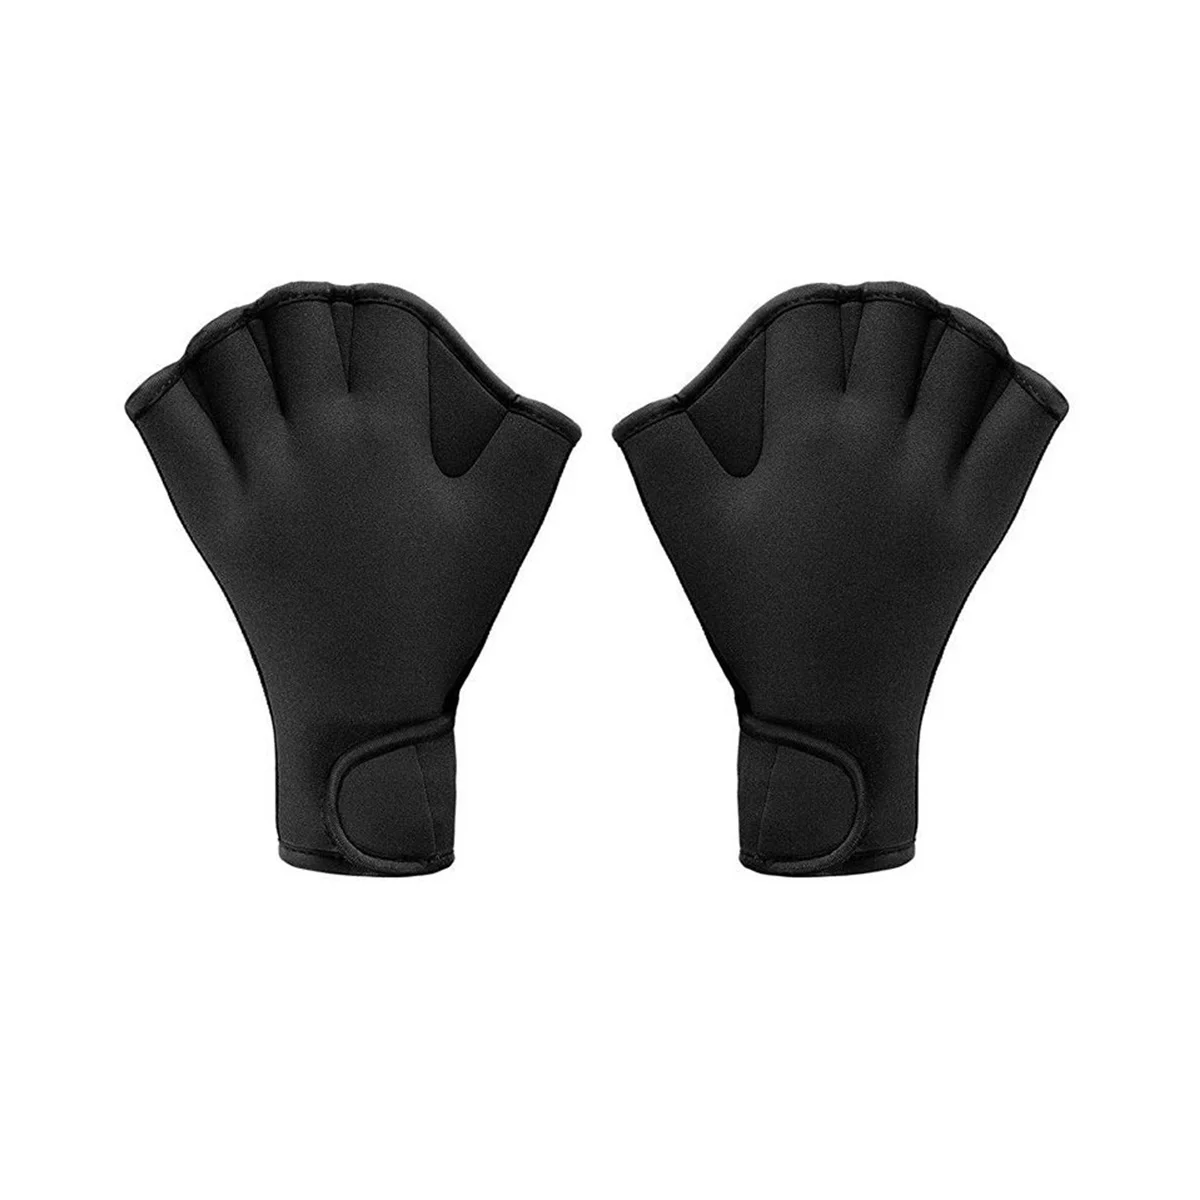 

Тренировочные перчатки для плавания, снаряжение для дайвинга, Нескользящие перчатки с полупальцами для тренировок по плаванию взрослых и детей, черные + L